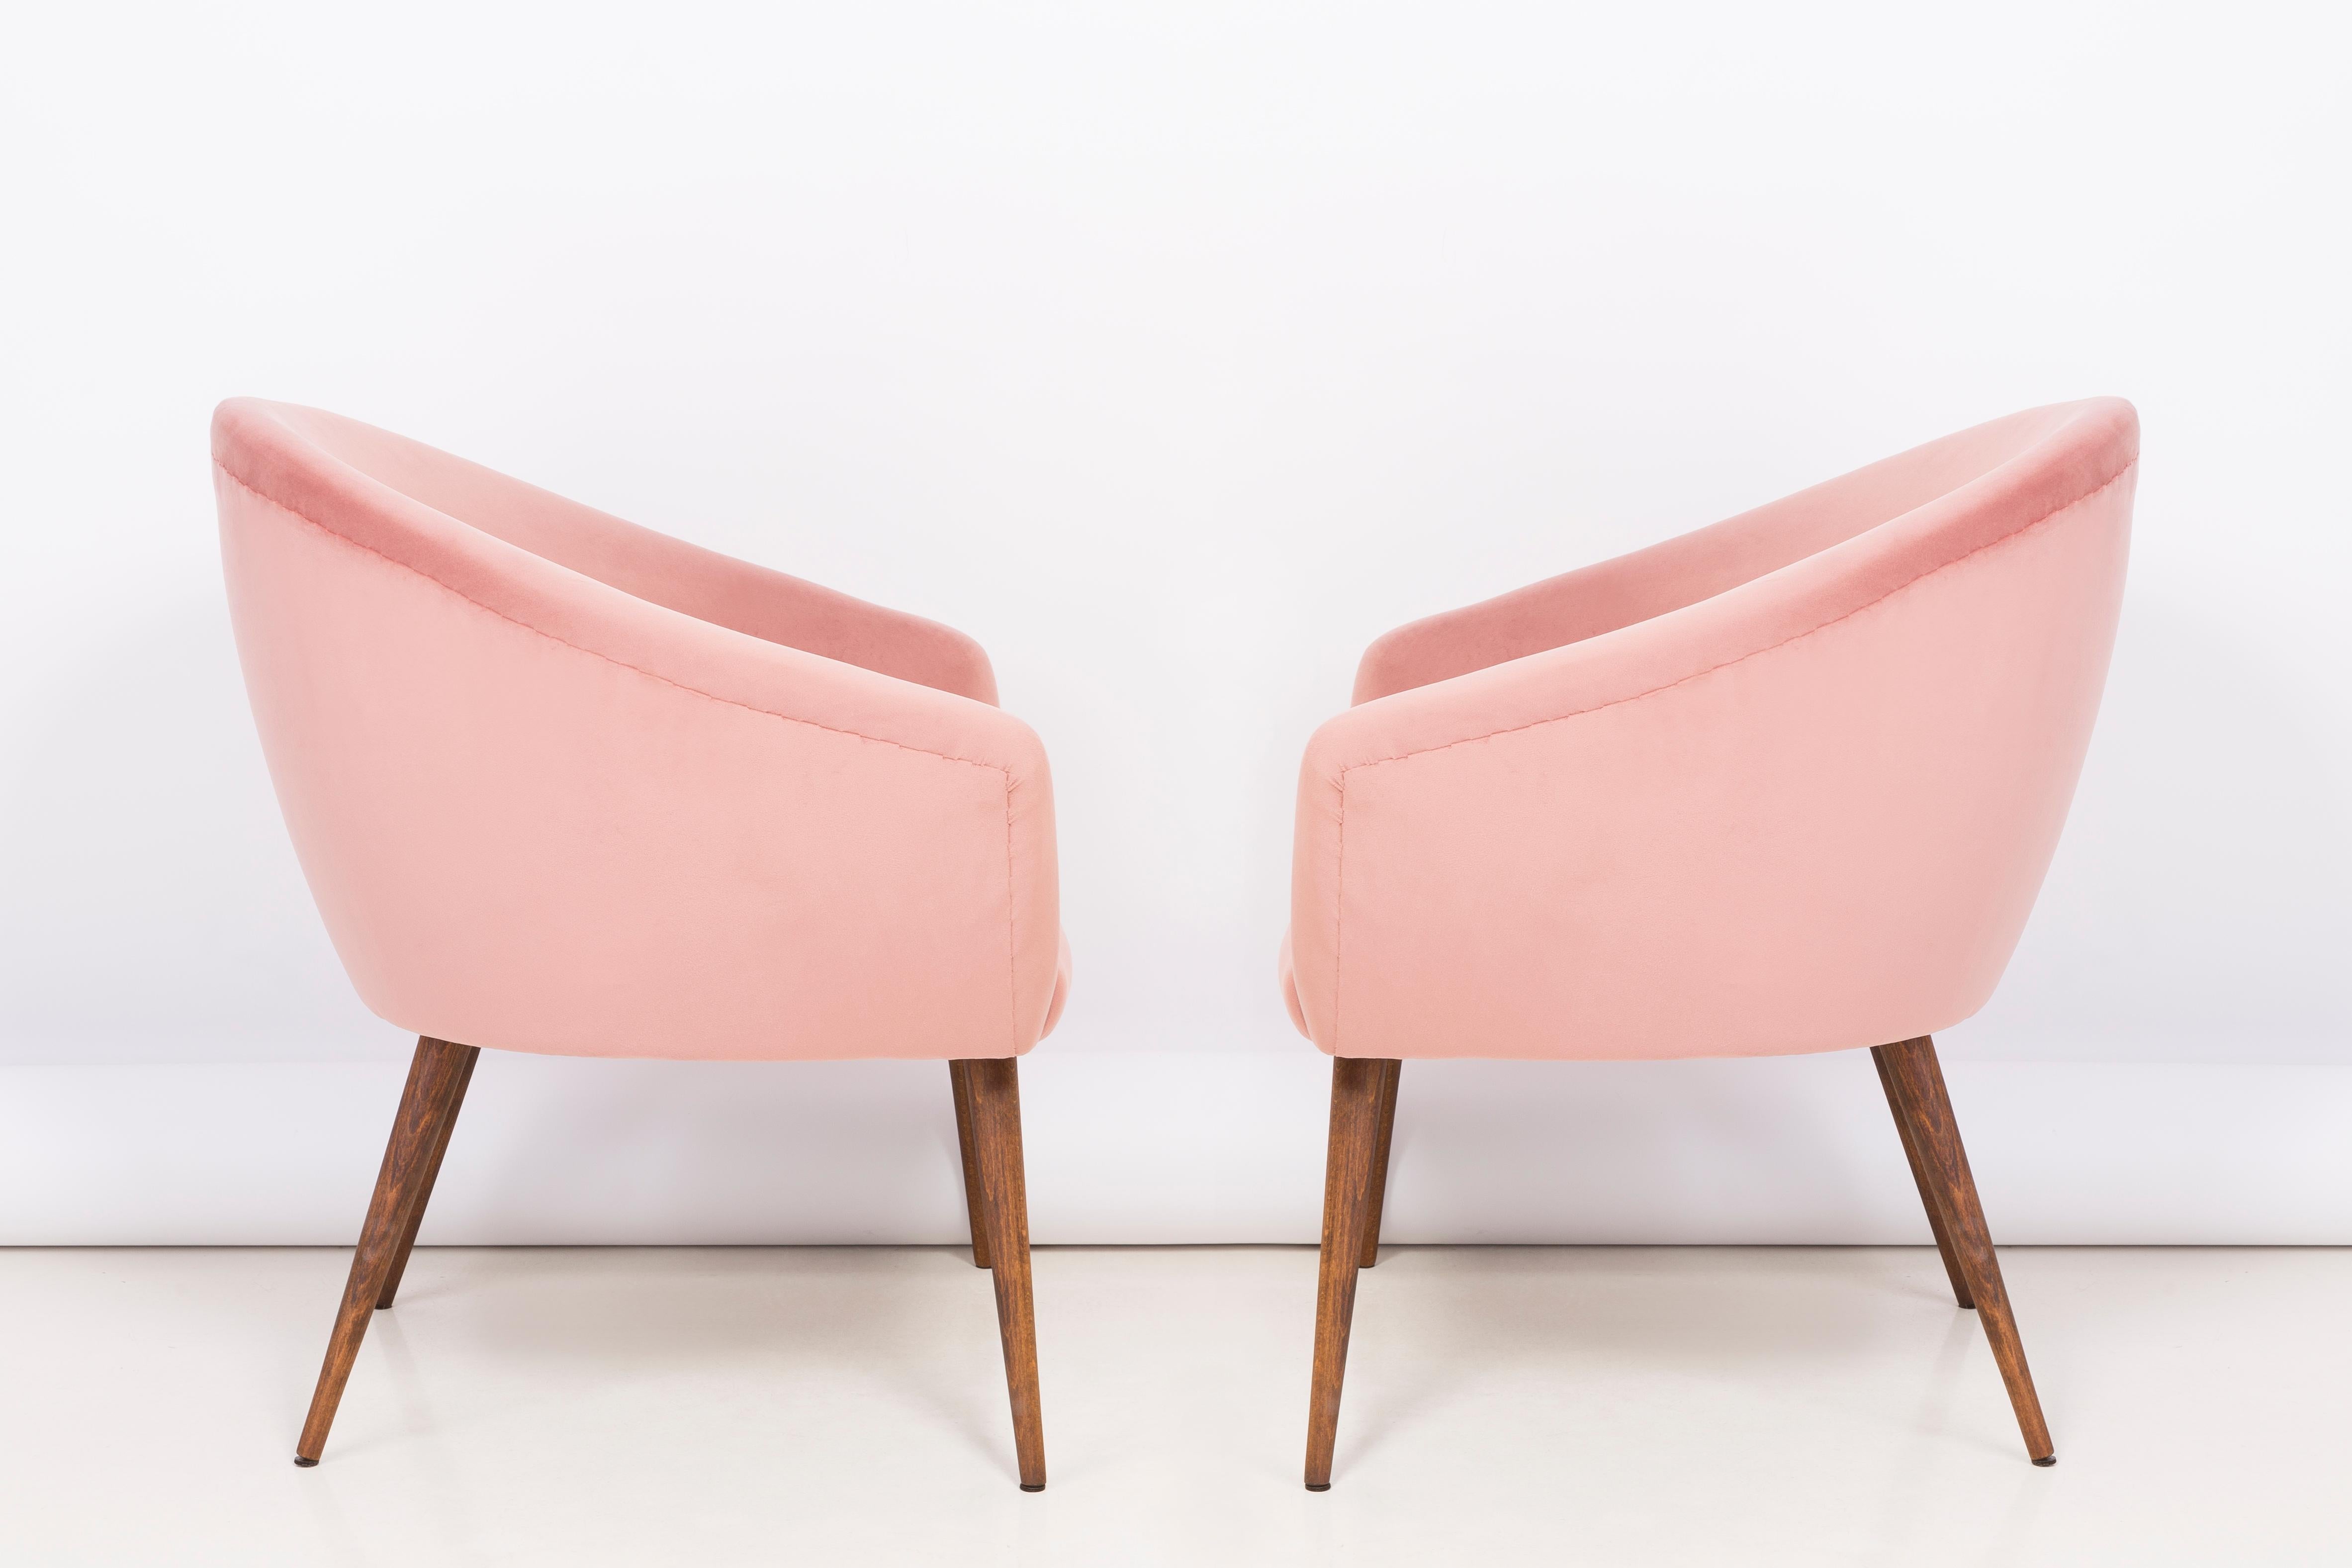 Sehr bequeme und stabile Clubsitze. Produziert in den 1960er Jahren in Polen. Die gesamten Sessel sind mit hochwertigem Velours in der Farbe rosa 2258 bezogen. Die Sessel wurden komplett neu gepolstert und aus Holz gefertigt. Wir können dieses Set